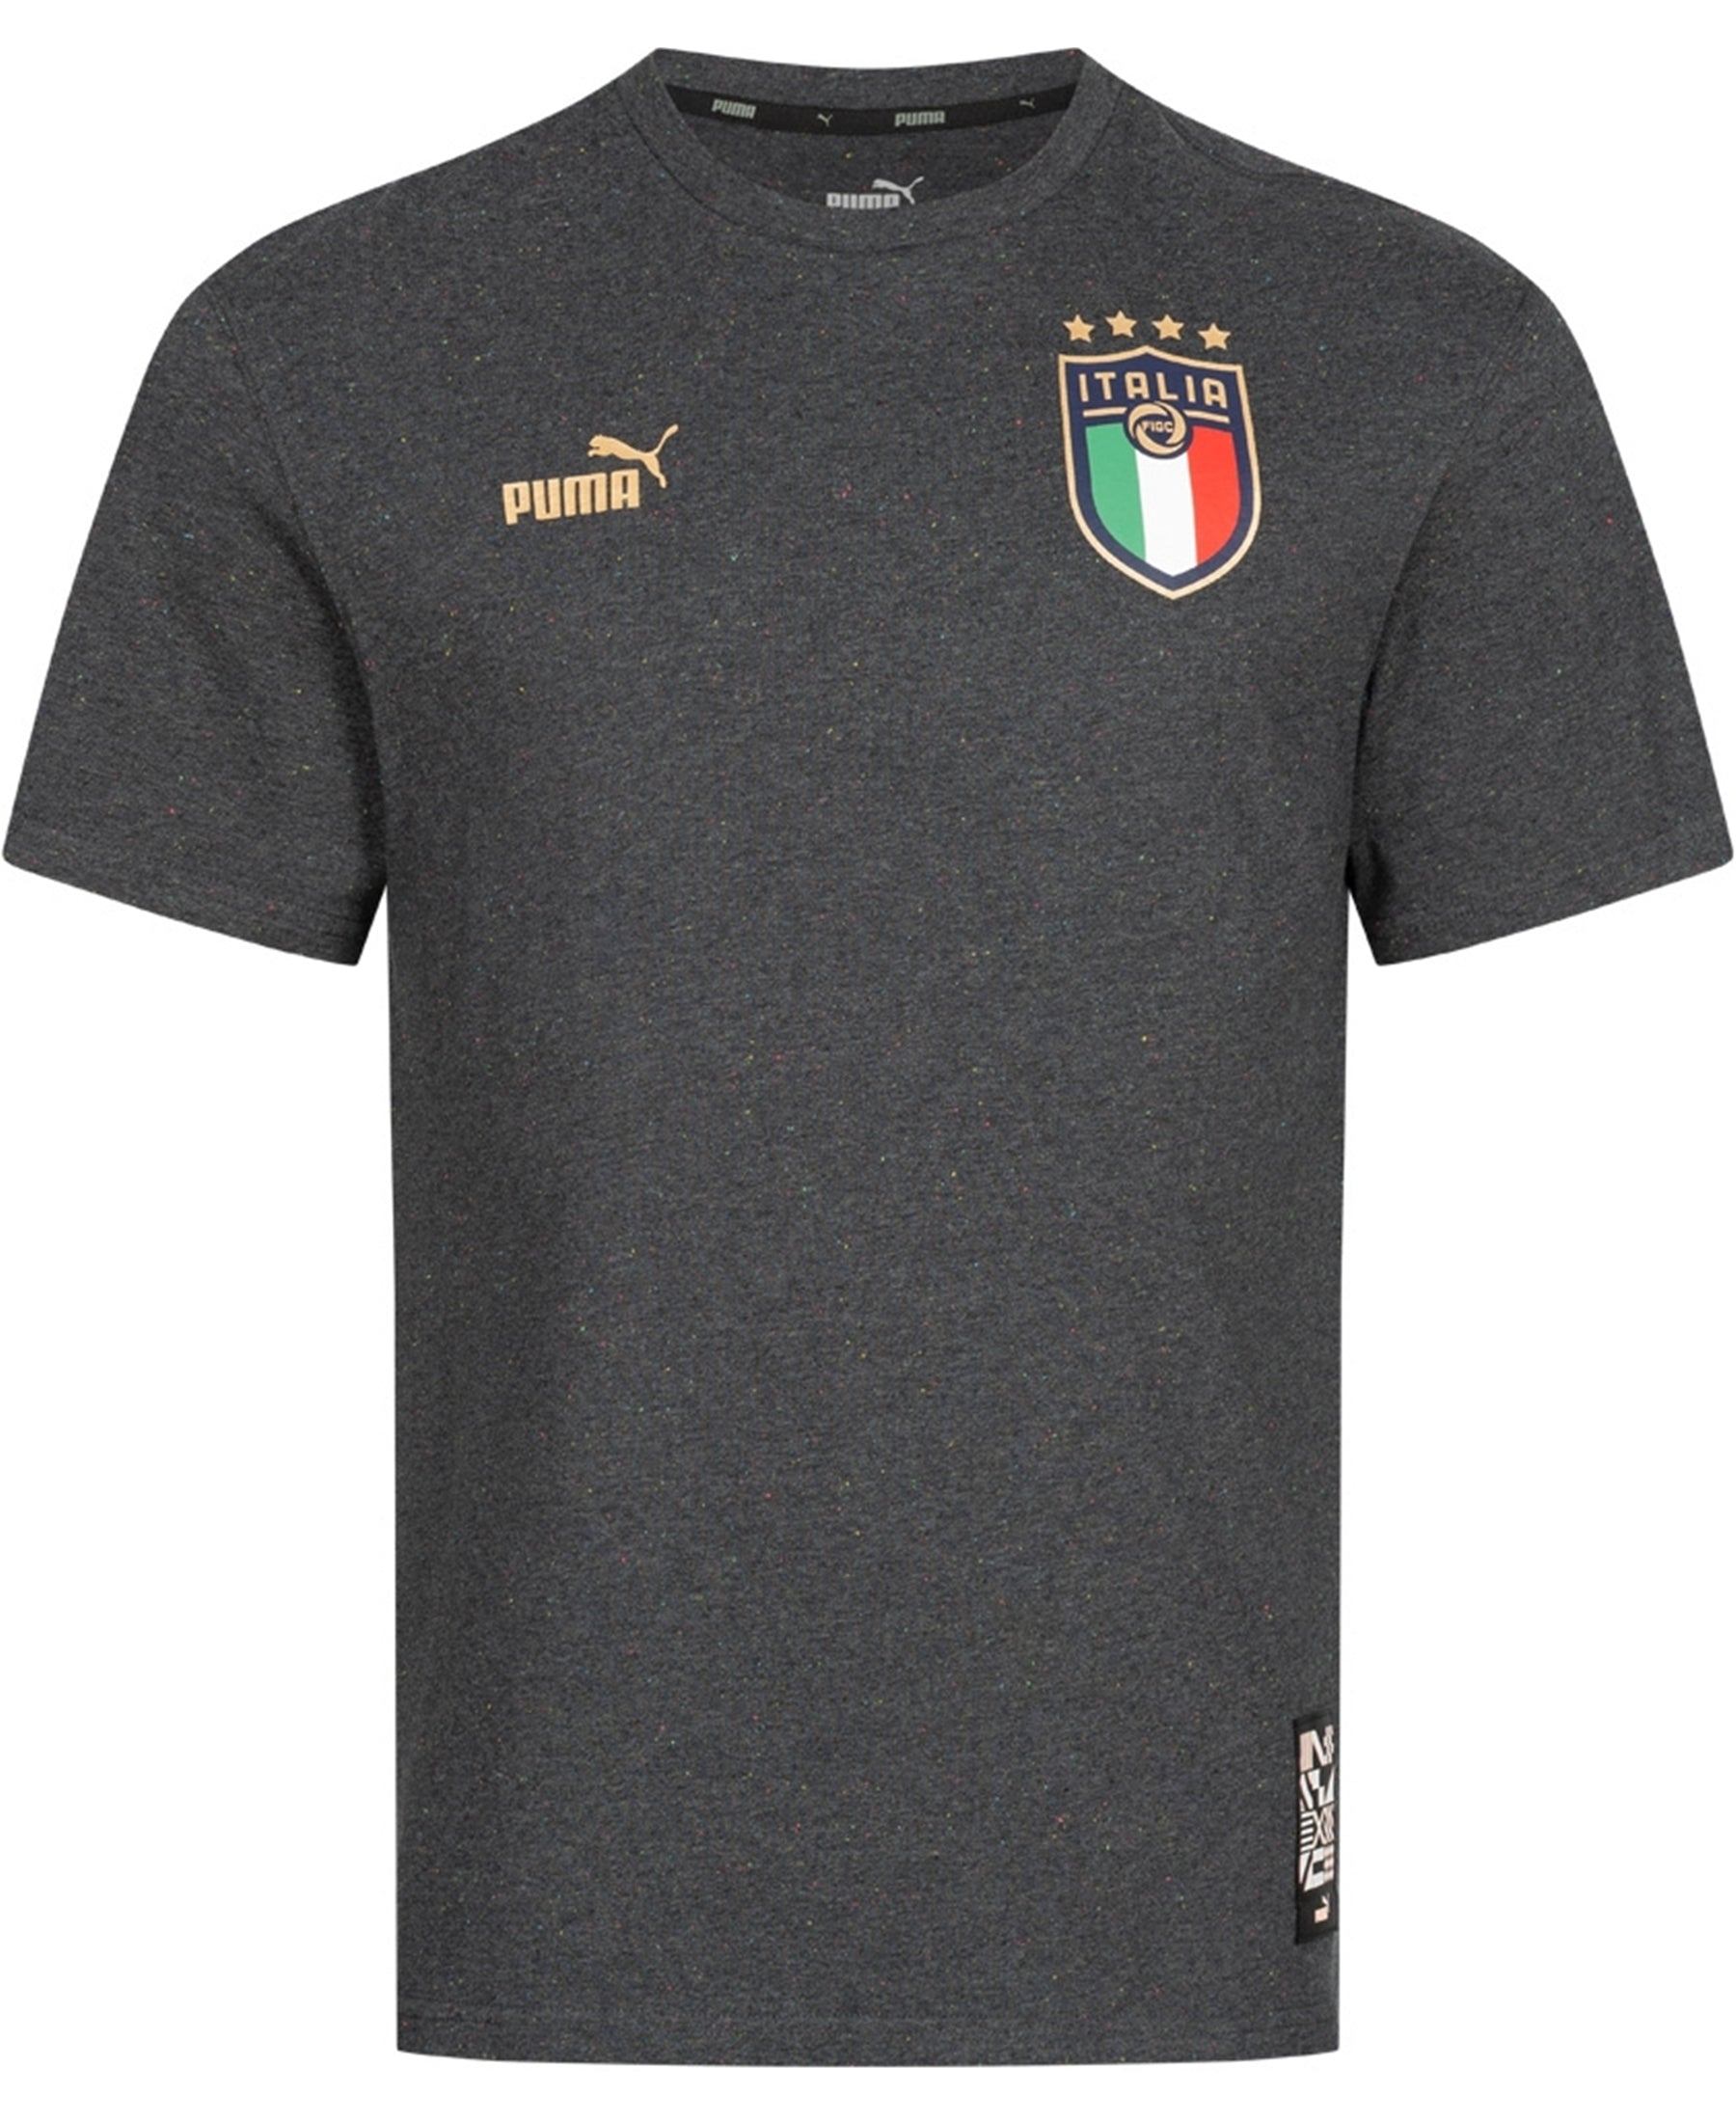 Das Puma Italien FIGC FTBLCulture T-Shirt (767134_09) ist ein Muss für alle Fans der italienischen Nationalmannschaft. Mit seinem stilvollen Design und dem FIGC-Logo zeigst du deine Unterstützung für die Squadra Azzurra. Dieses T-Shirt ist nicht nur ein Ausdruck deiner Leidenschaft für Fußball, sondern bietet auch hohen Tragekomfort dank des weichen Materials und des bequemen Schnitts. Zeige deine Verbundenheit mit Italien und genieße die Vorzüge dieses hochwertigen T-Shirts.